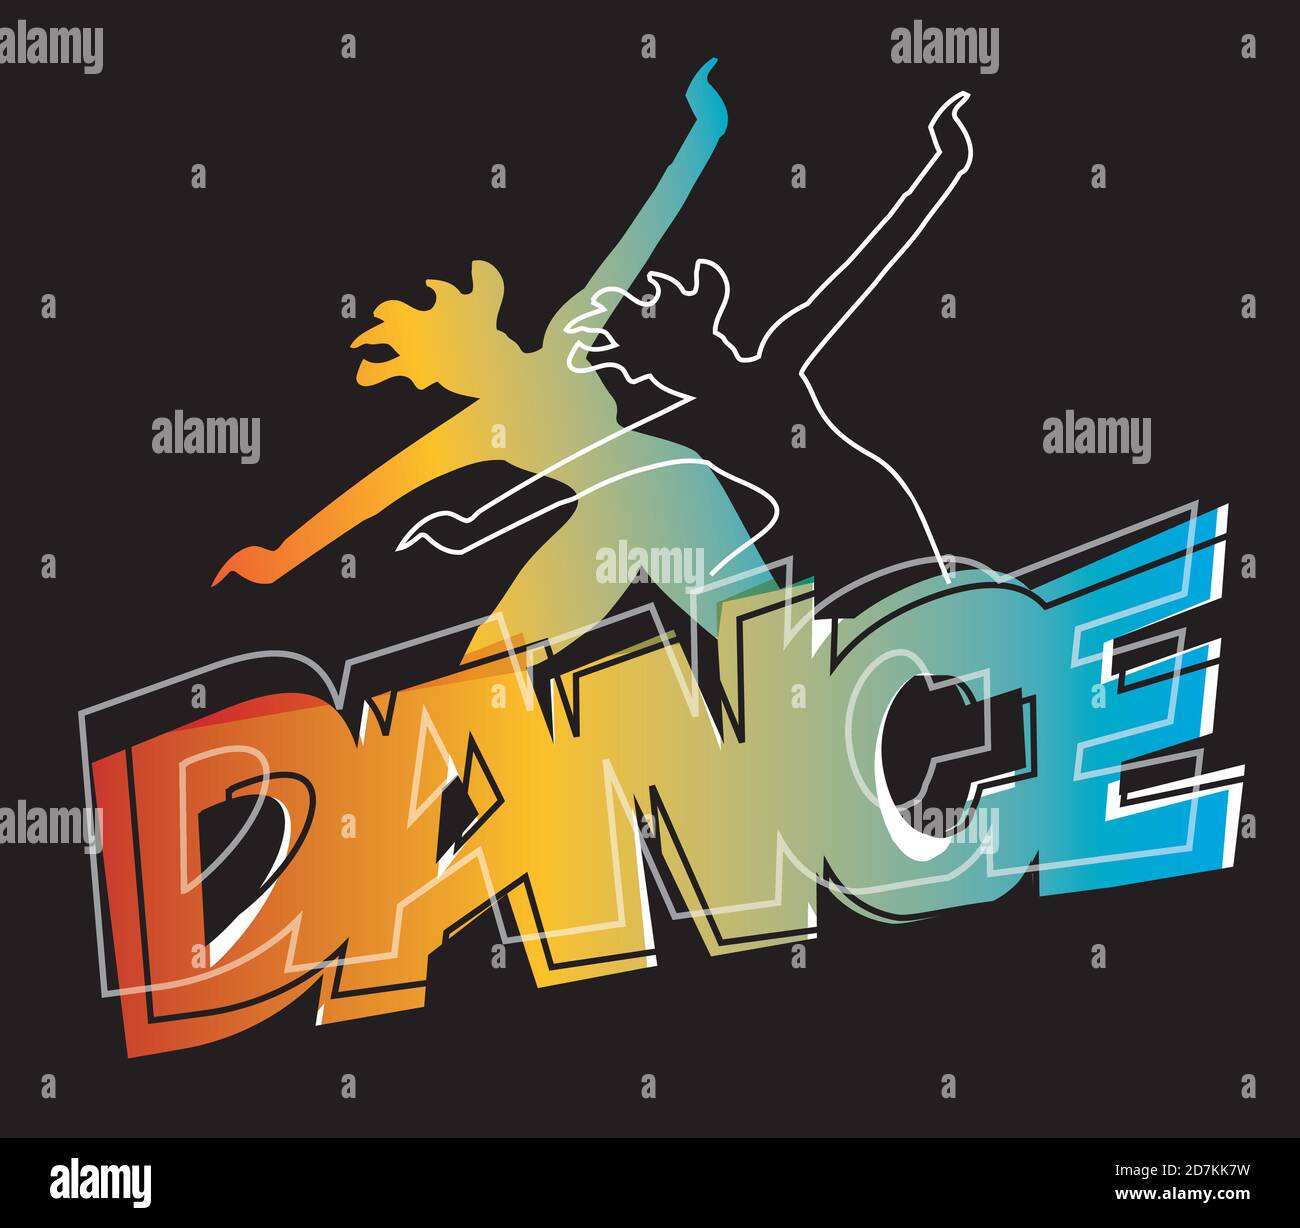 Disco, Aerobic-Tanz. Stilisierte expressive Illustration von tanzenden Mädchen Silhouetten mit Inschrift TANZ. Vektor verfügbar. Stock Vektor